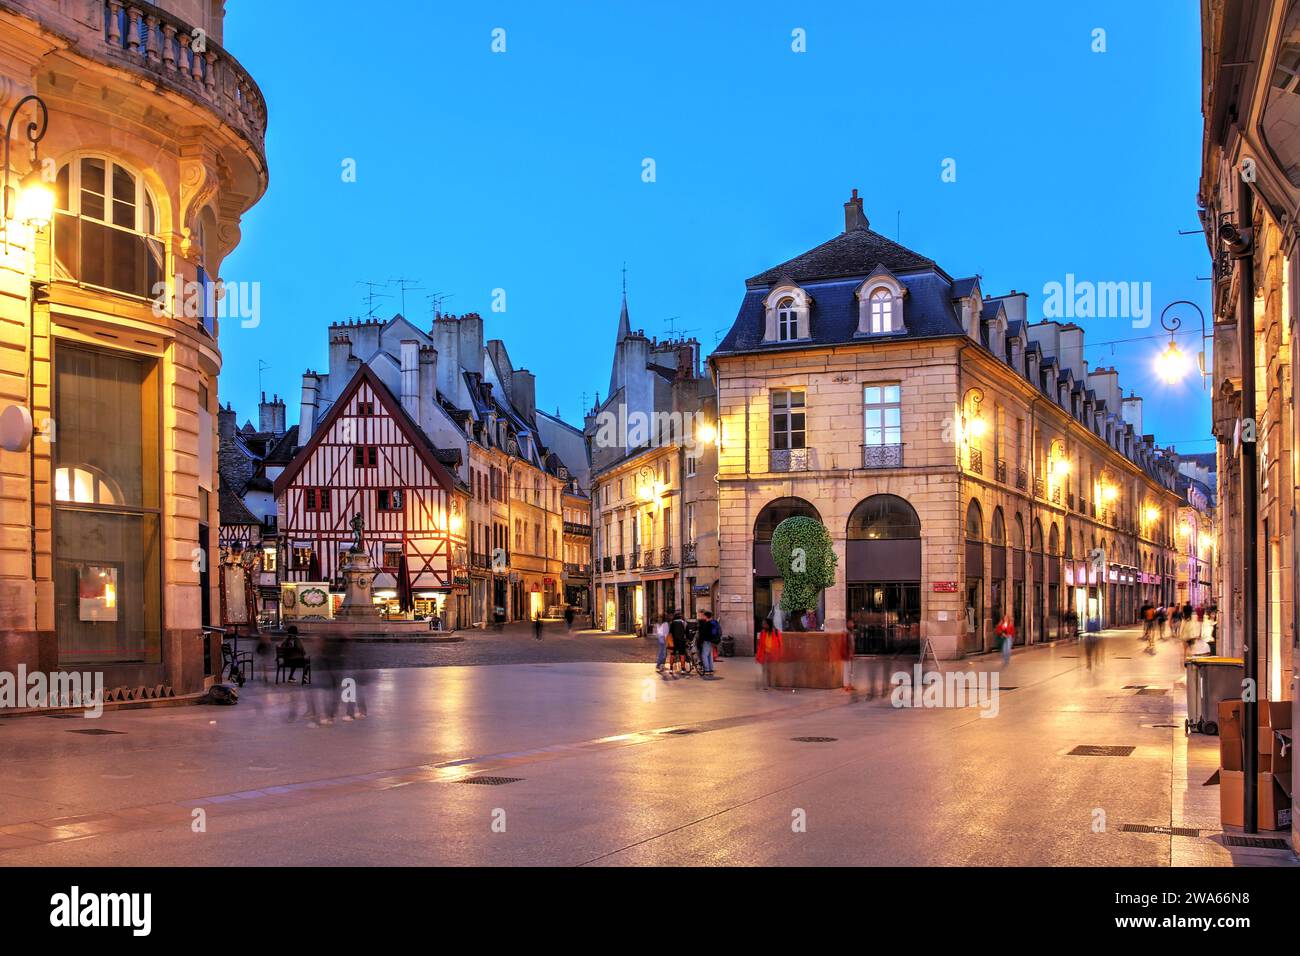 Notte lungo la Route de la Liberte che interseca Place Francois Rude (o Place du Bareuzai) nel centro storico di Digione, in Francia. Foto Stock